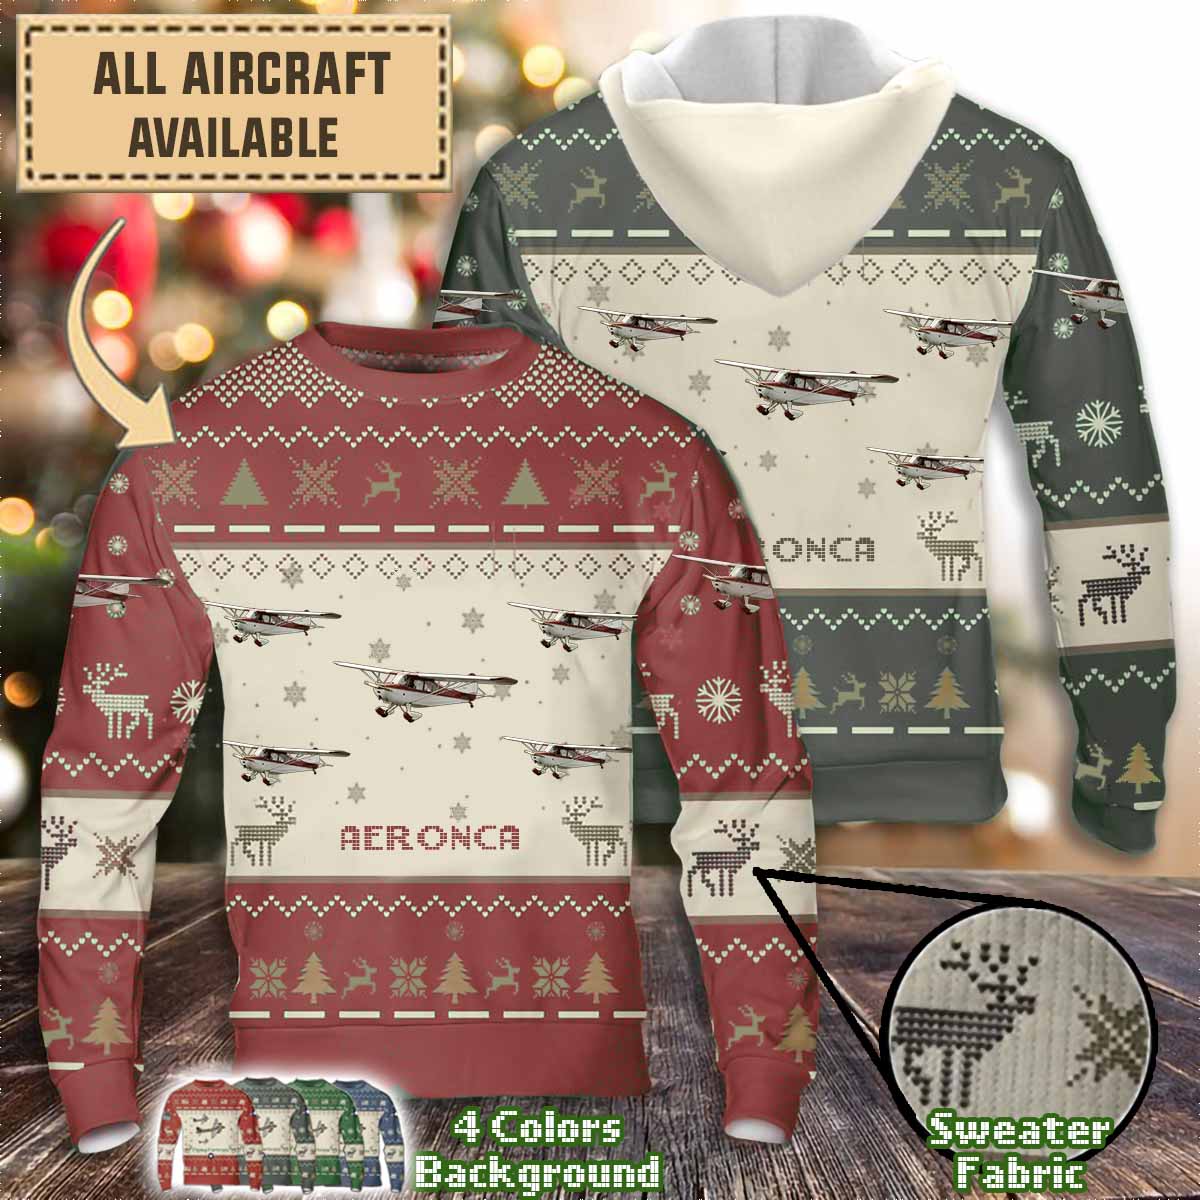 aeroncaaircraft sweater 8gleu